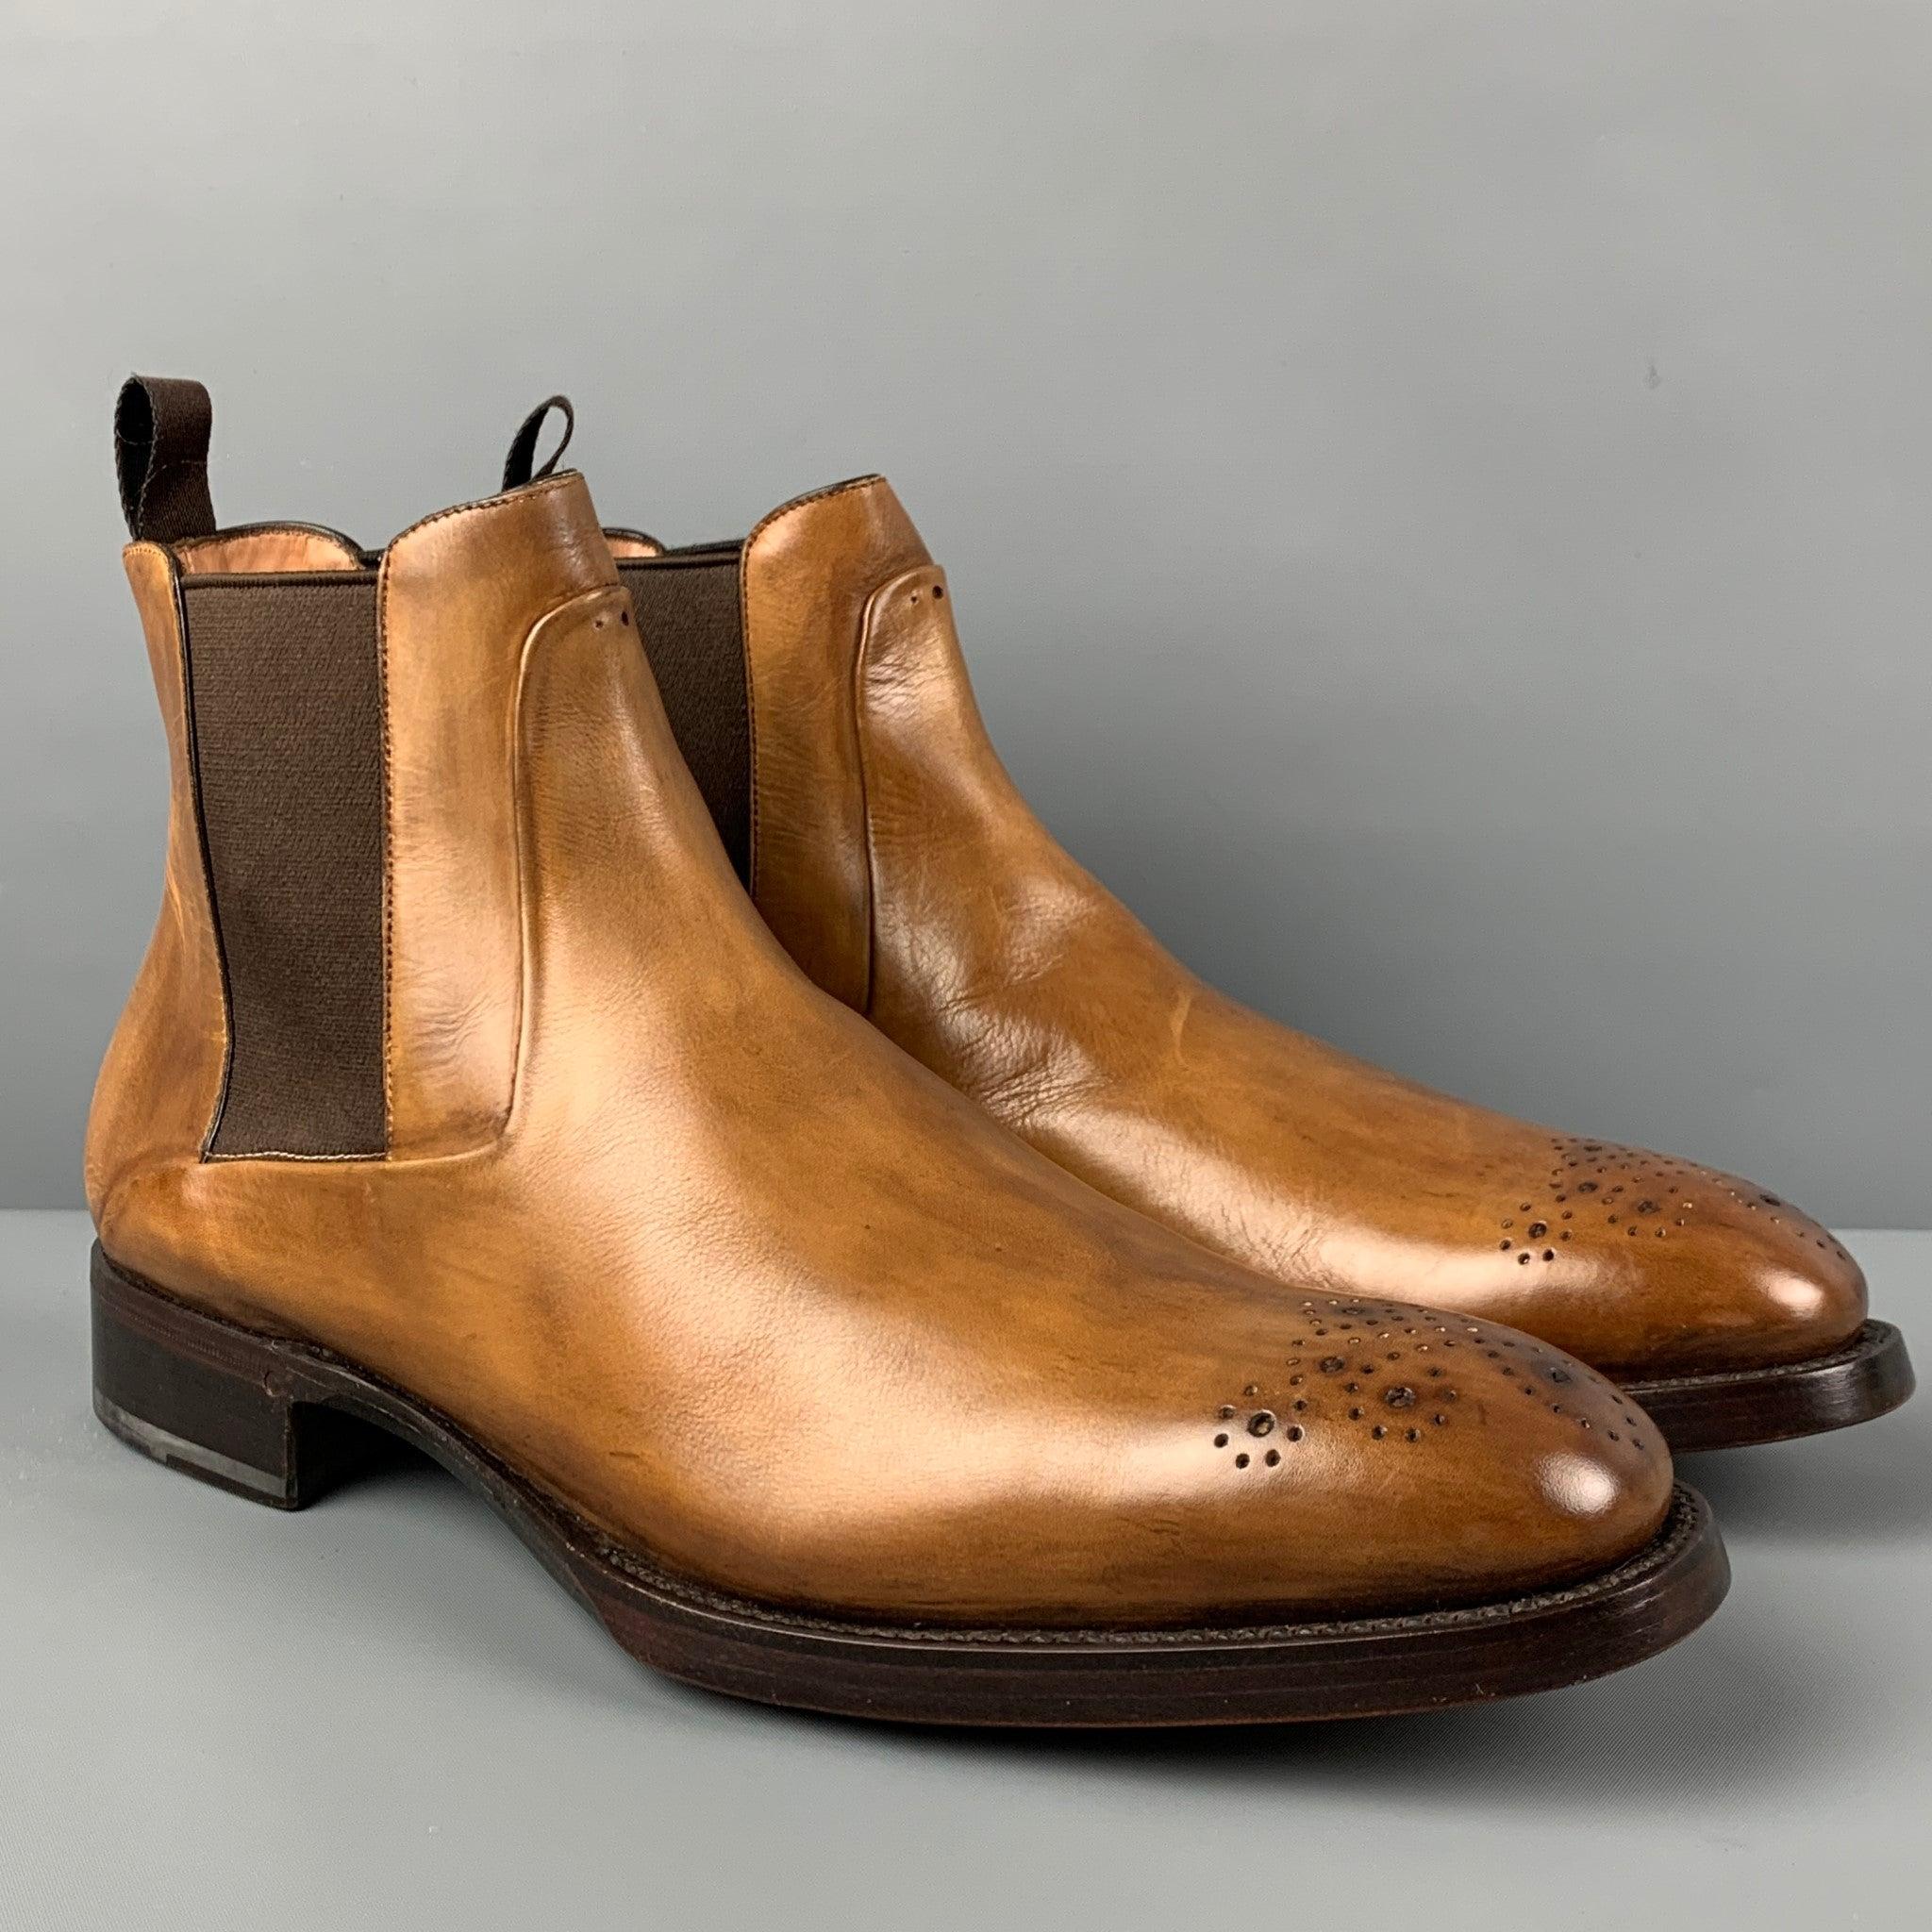 PAUL STUART Stiefel aus hellbraunem Antikleder mit Chelsea-Style, perforierter Schuhspitze und klobigem Absatz. Hergestellt in Italien.
Sehr gut
Gebrauchtes Zustand. 

Markiert:   3424 / 11 

Abmessungen: 
  Länge: 13 Zoll  Breite: 4,5 Zoll  Höhe: